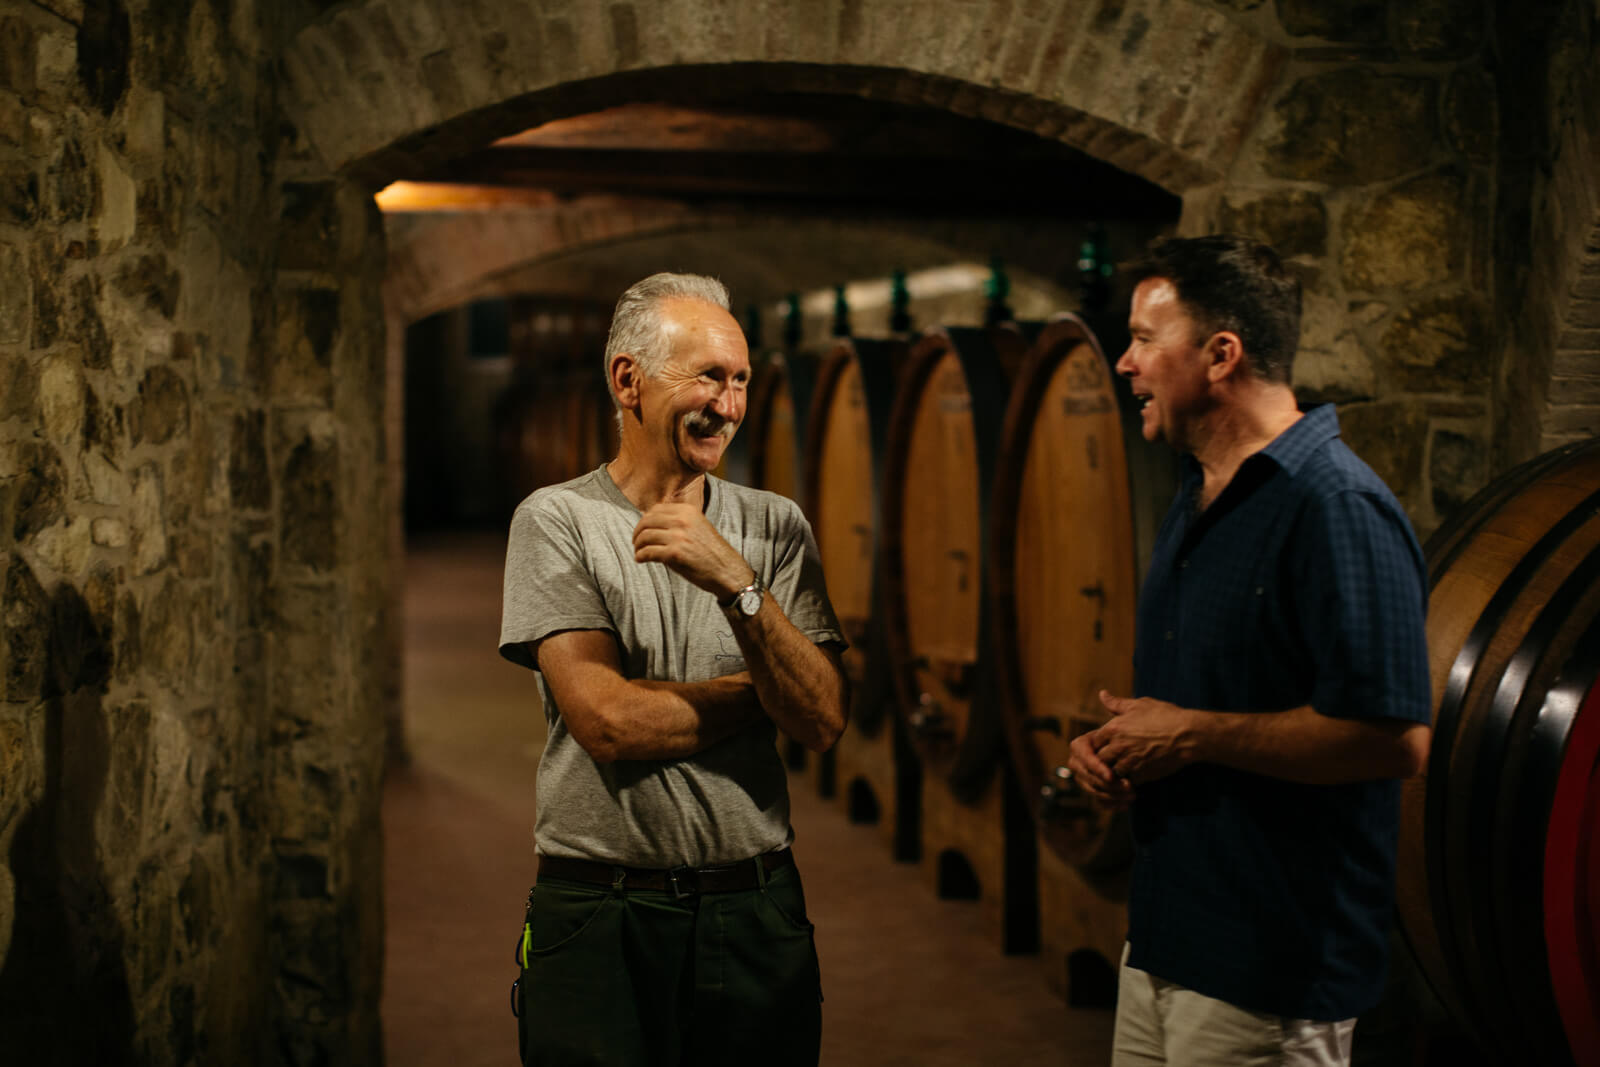 todd speaking with wine distiller in cellar